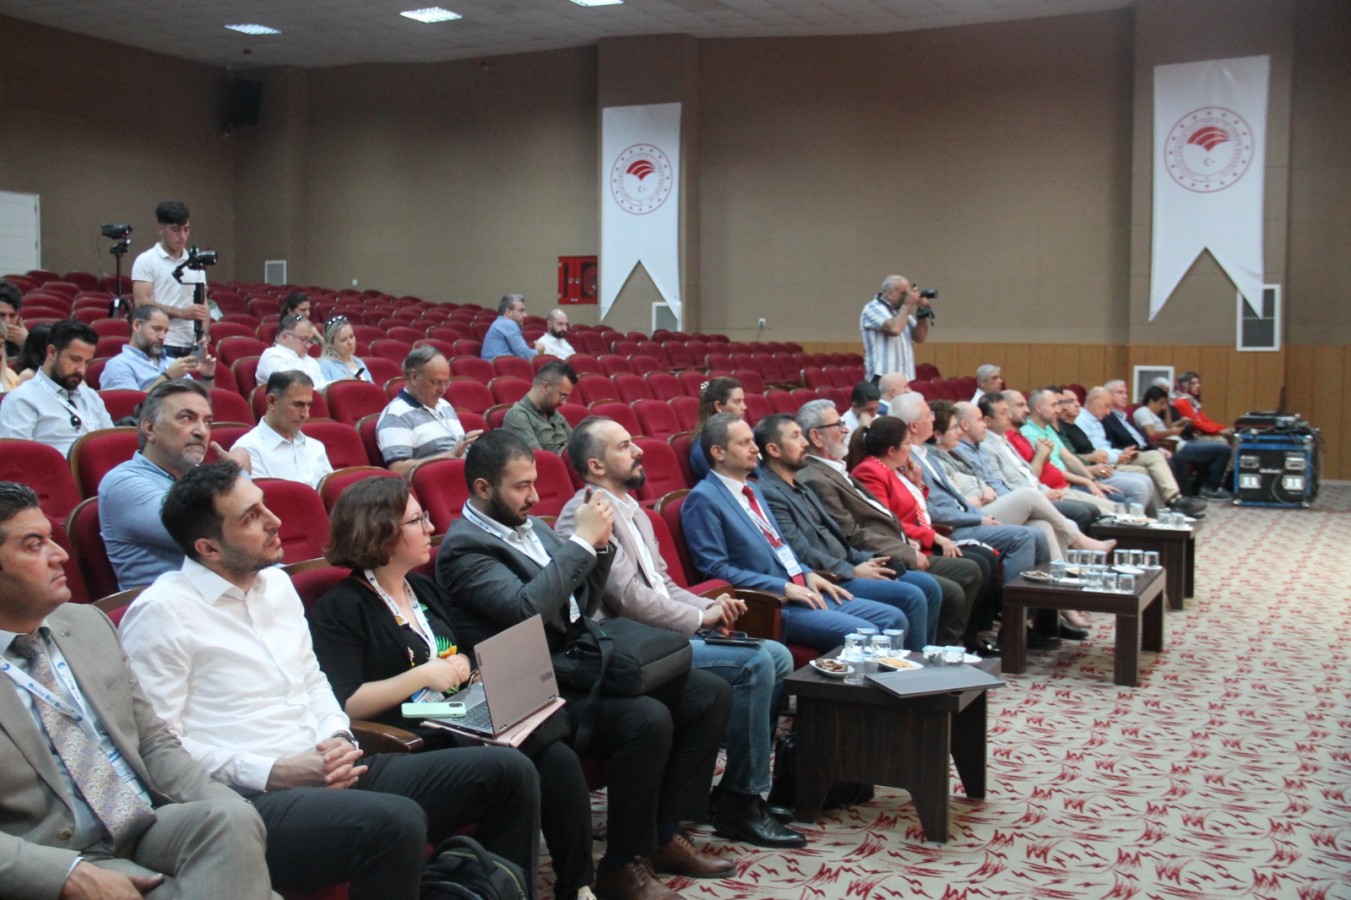 Dijital ve teknoloji etkinliği bu yıl Urfa'da yapılıyor